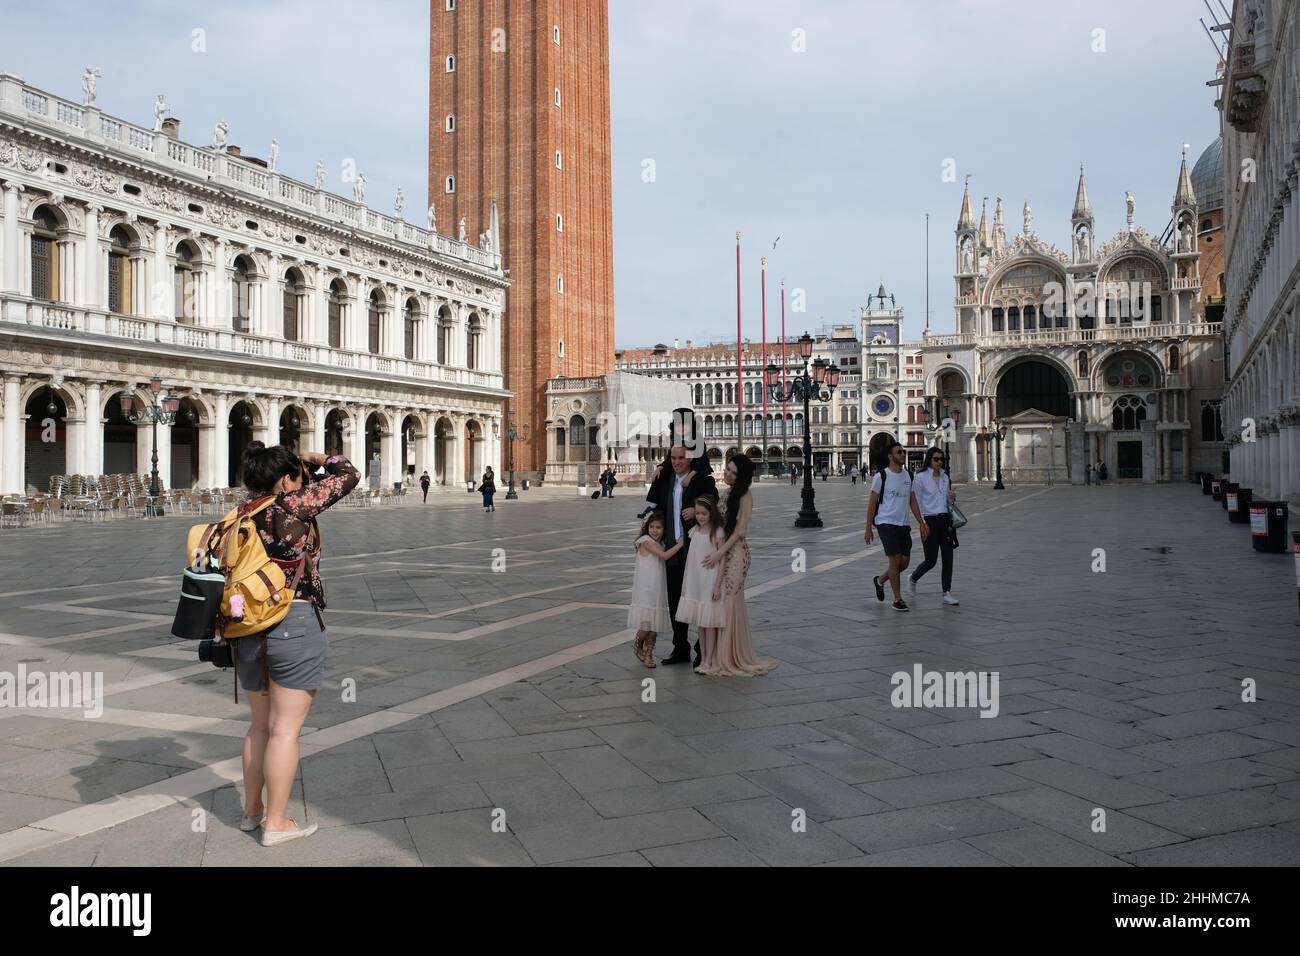 Tourist walk in Saint Mark's Square in Venice, Italy, June 20, 2020. Stock Photo